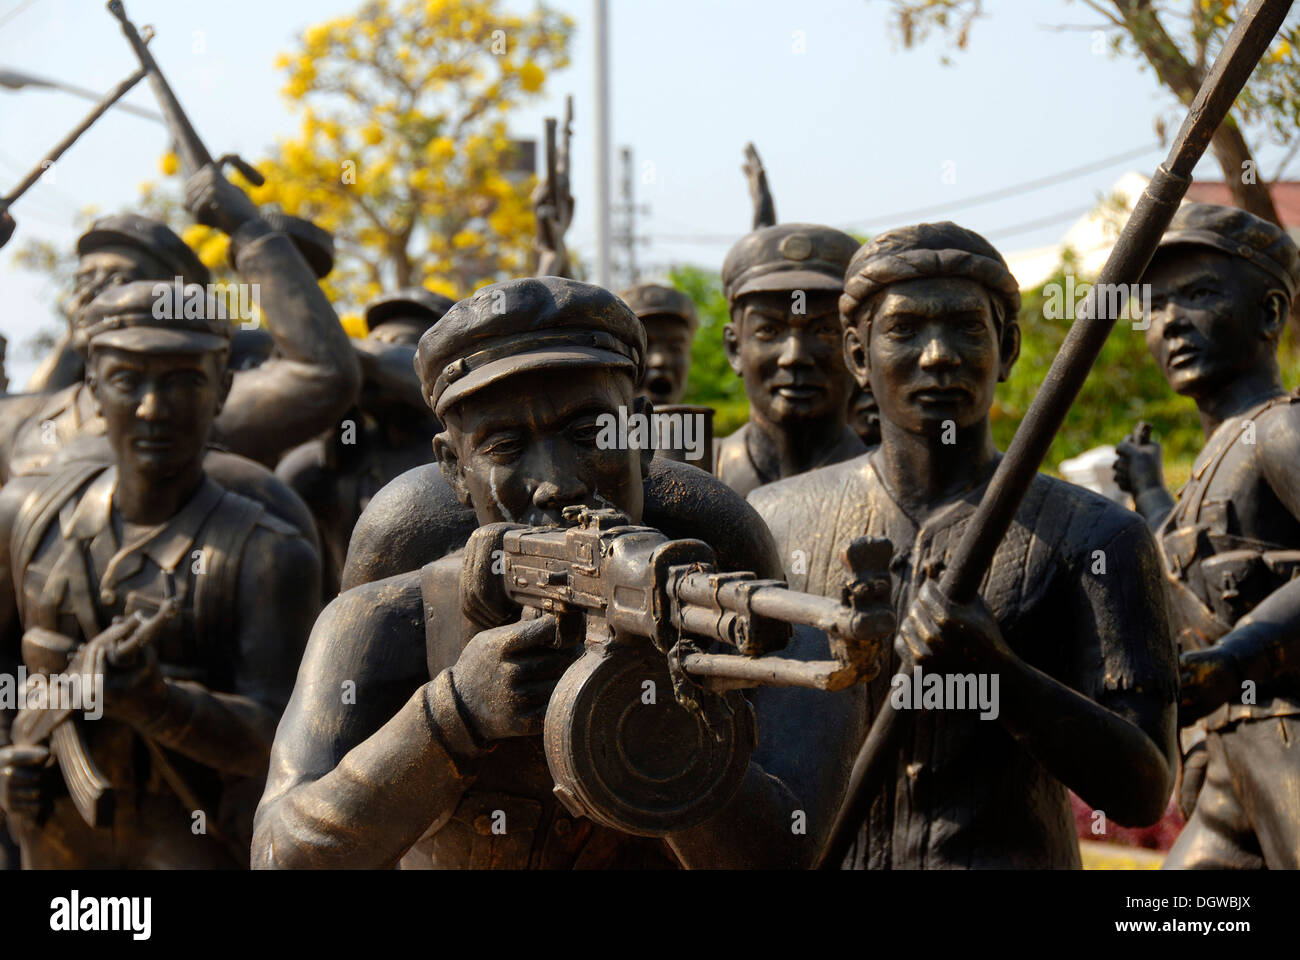 Des statues en bronze de soldats de la Deuxième Guerre d'Indochine, Musée de l'armée, Vientiane, Laos, Asie du Sud, Asie Banque D'Images